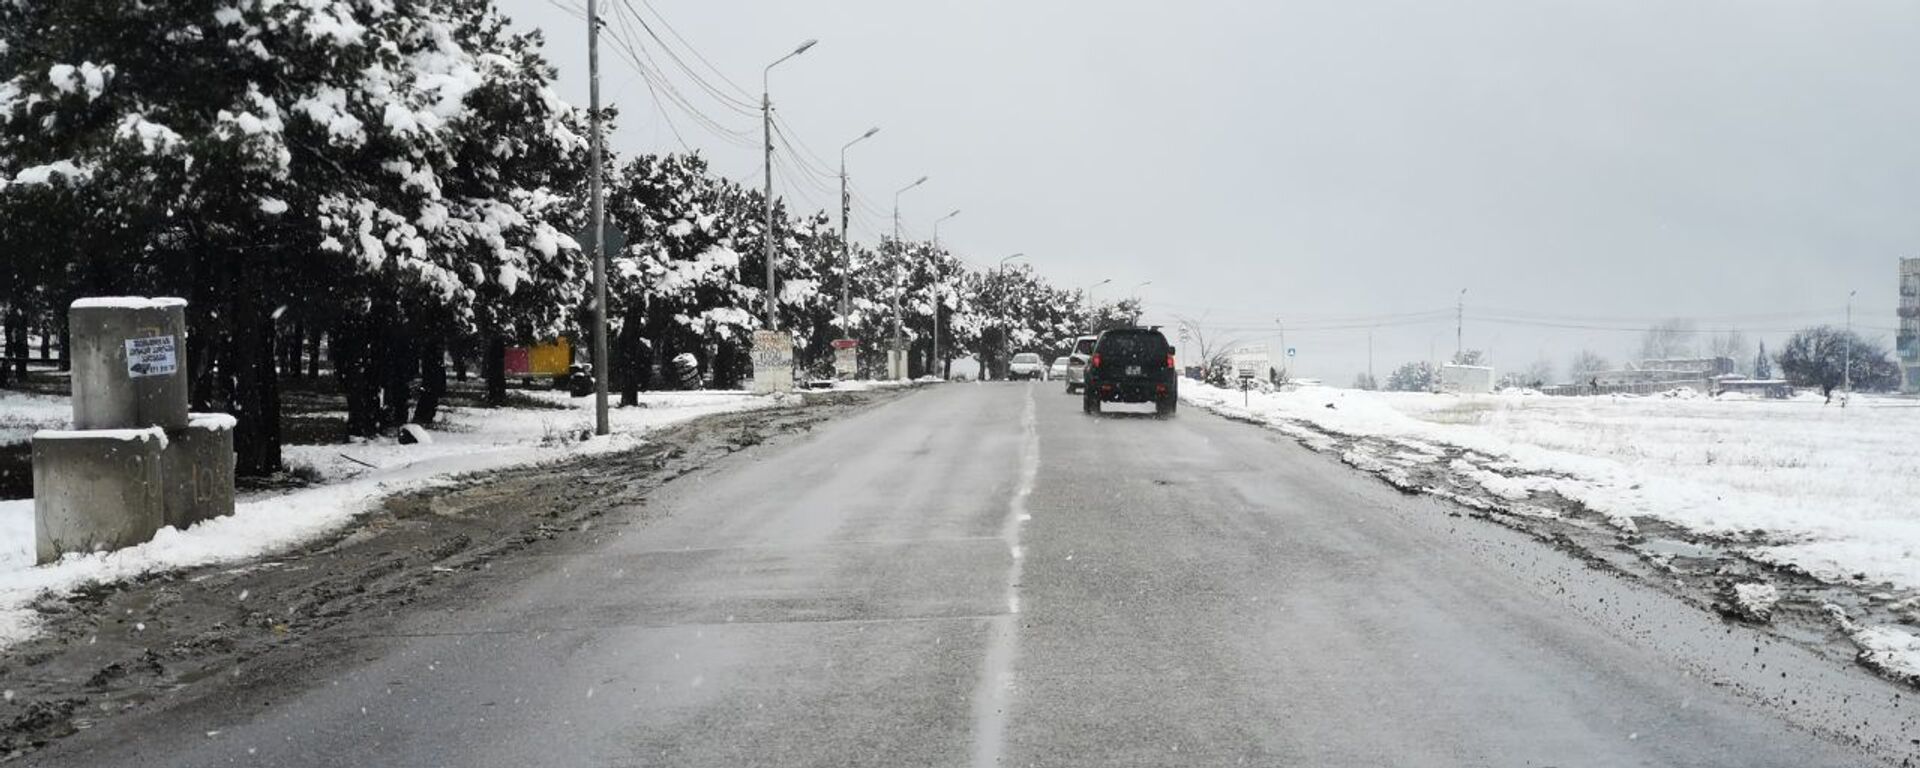 Зимняя дорога - заснеженная трасса после снегопада - Sputnik Грузия, 1920, 18.02.2021